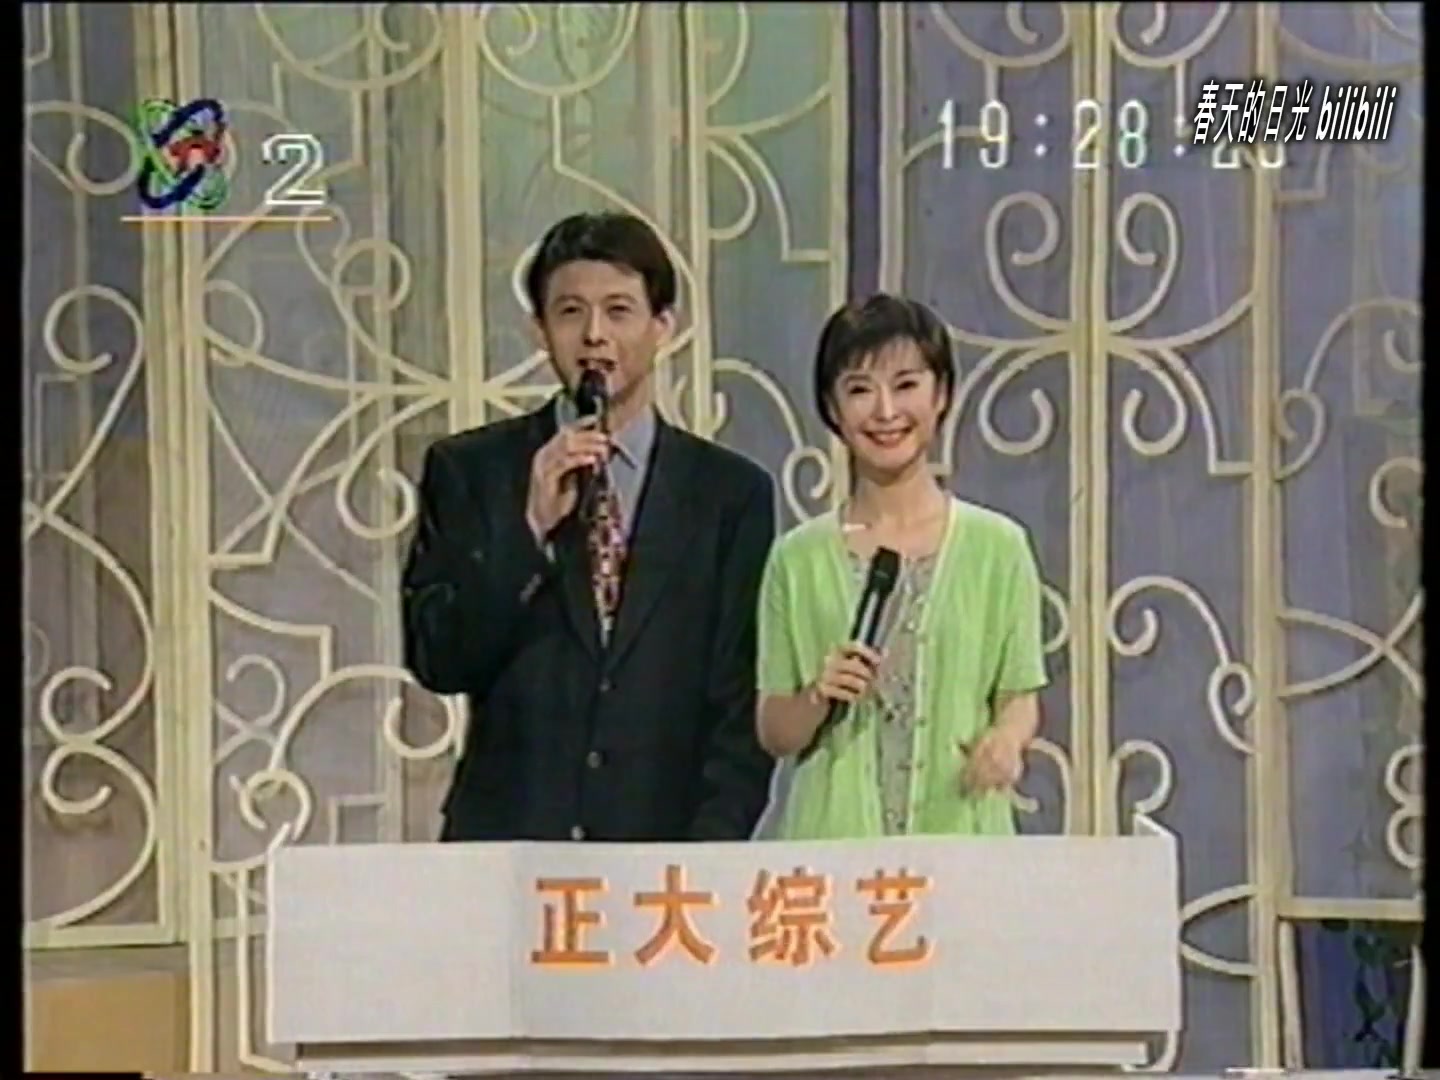 1991正大综艺第一期图片